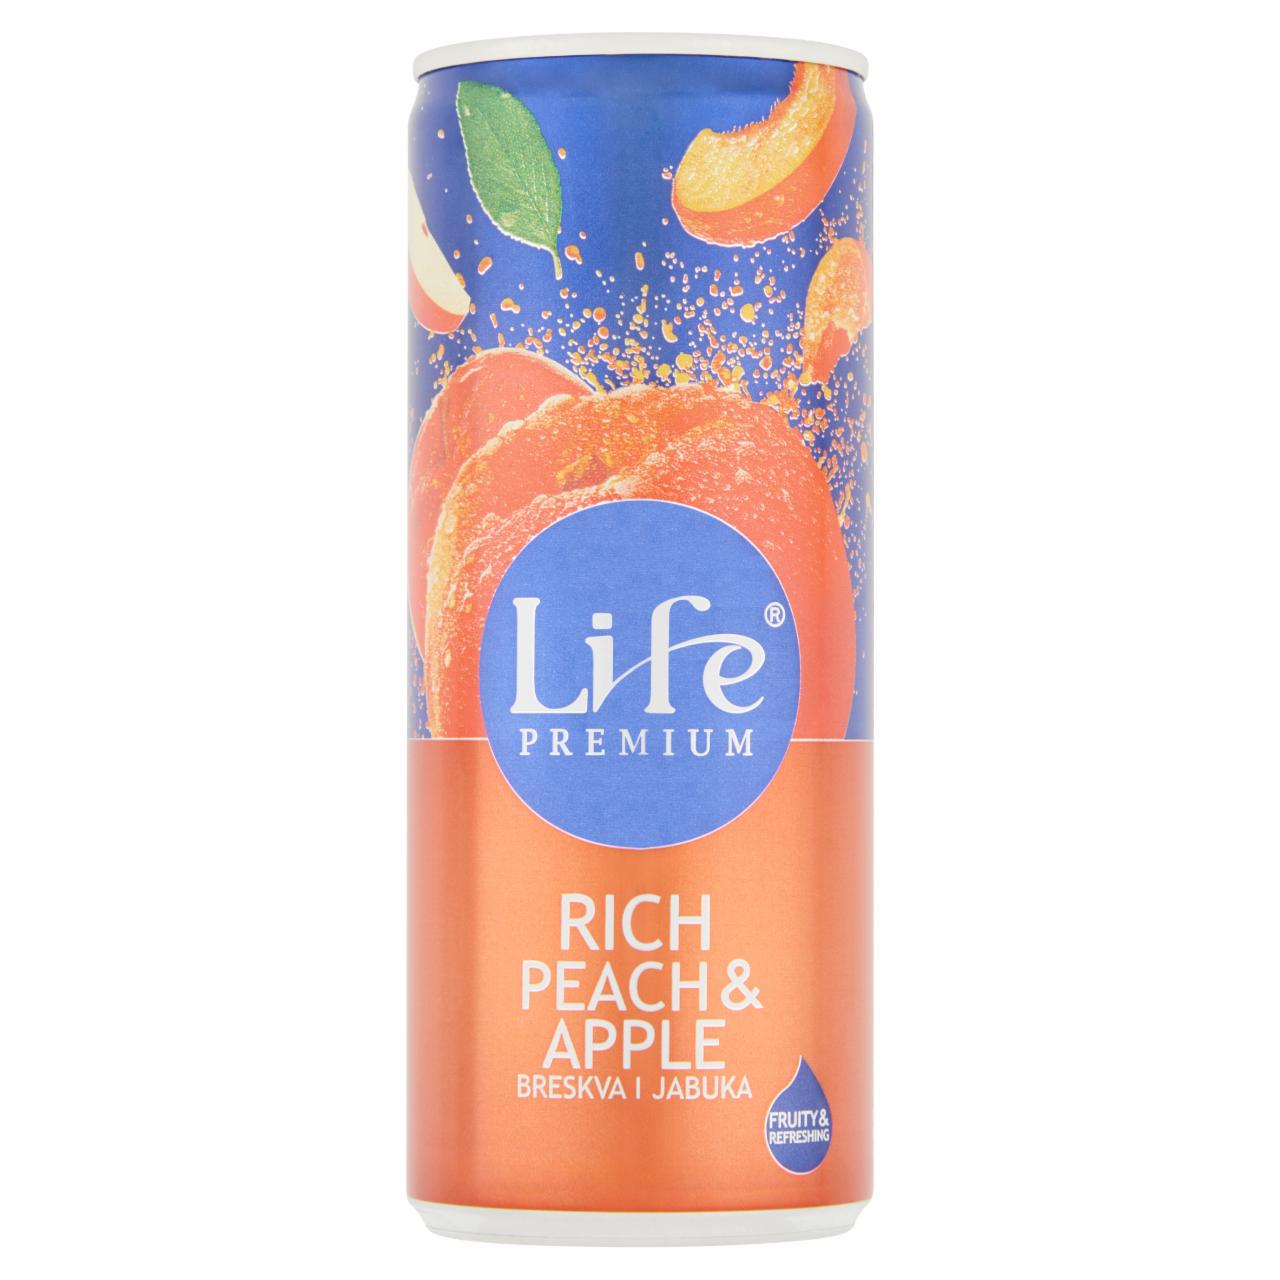 Képek - Life Premium Rich Peach & Apple őszibarack- és almanektár 250 ml